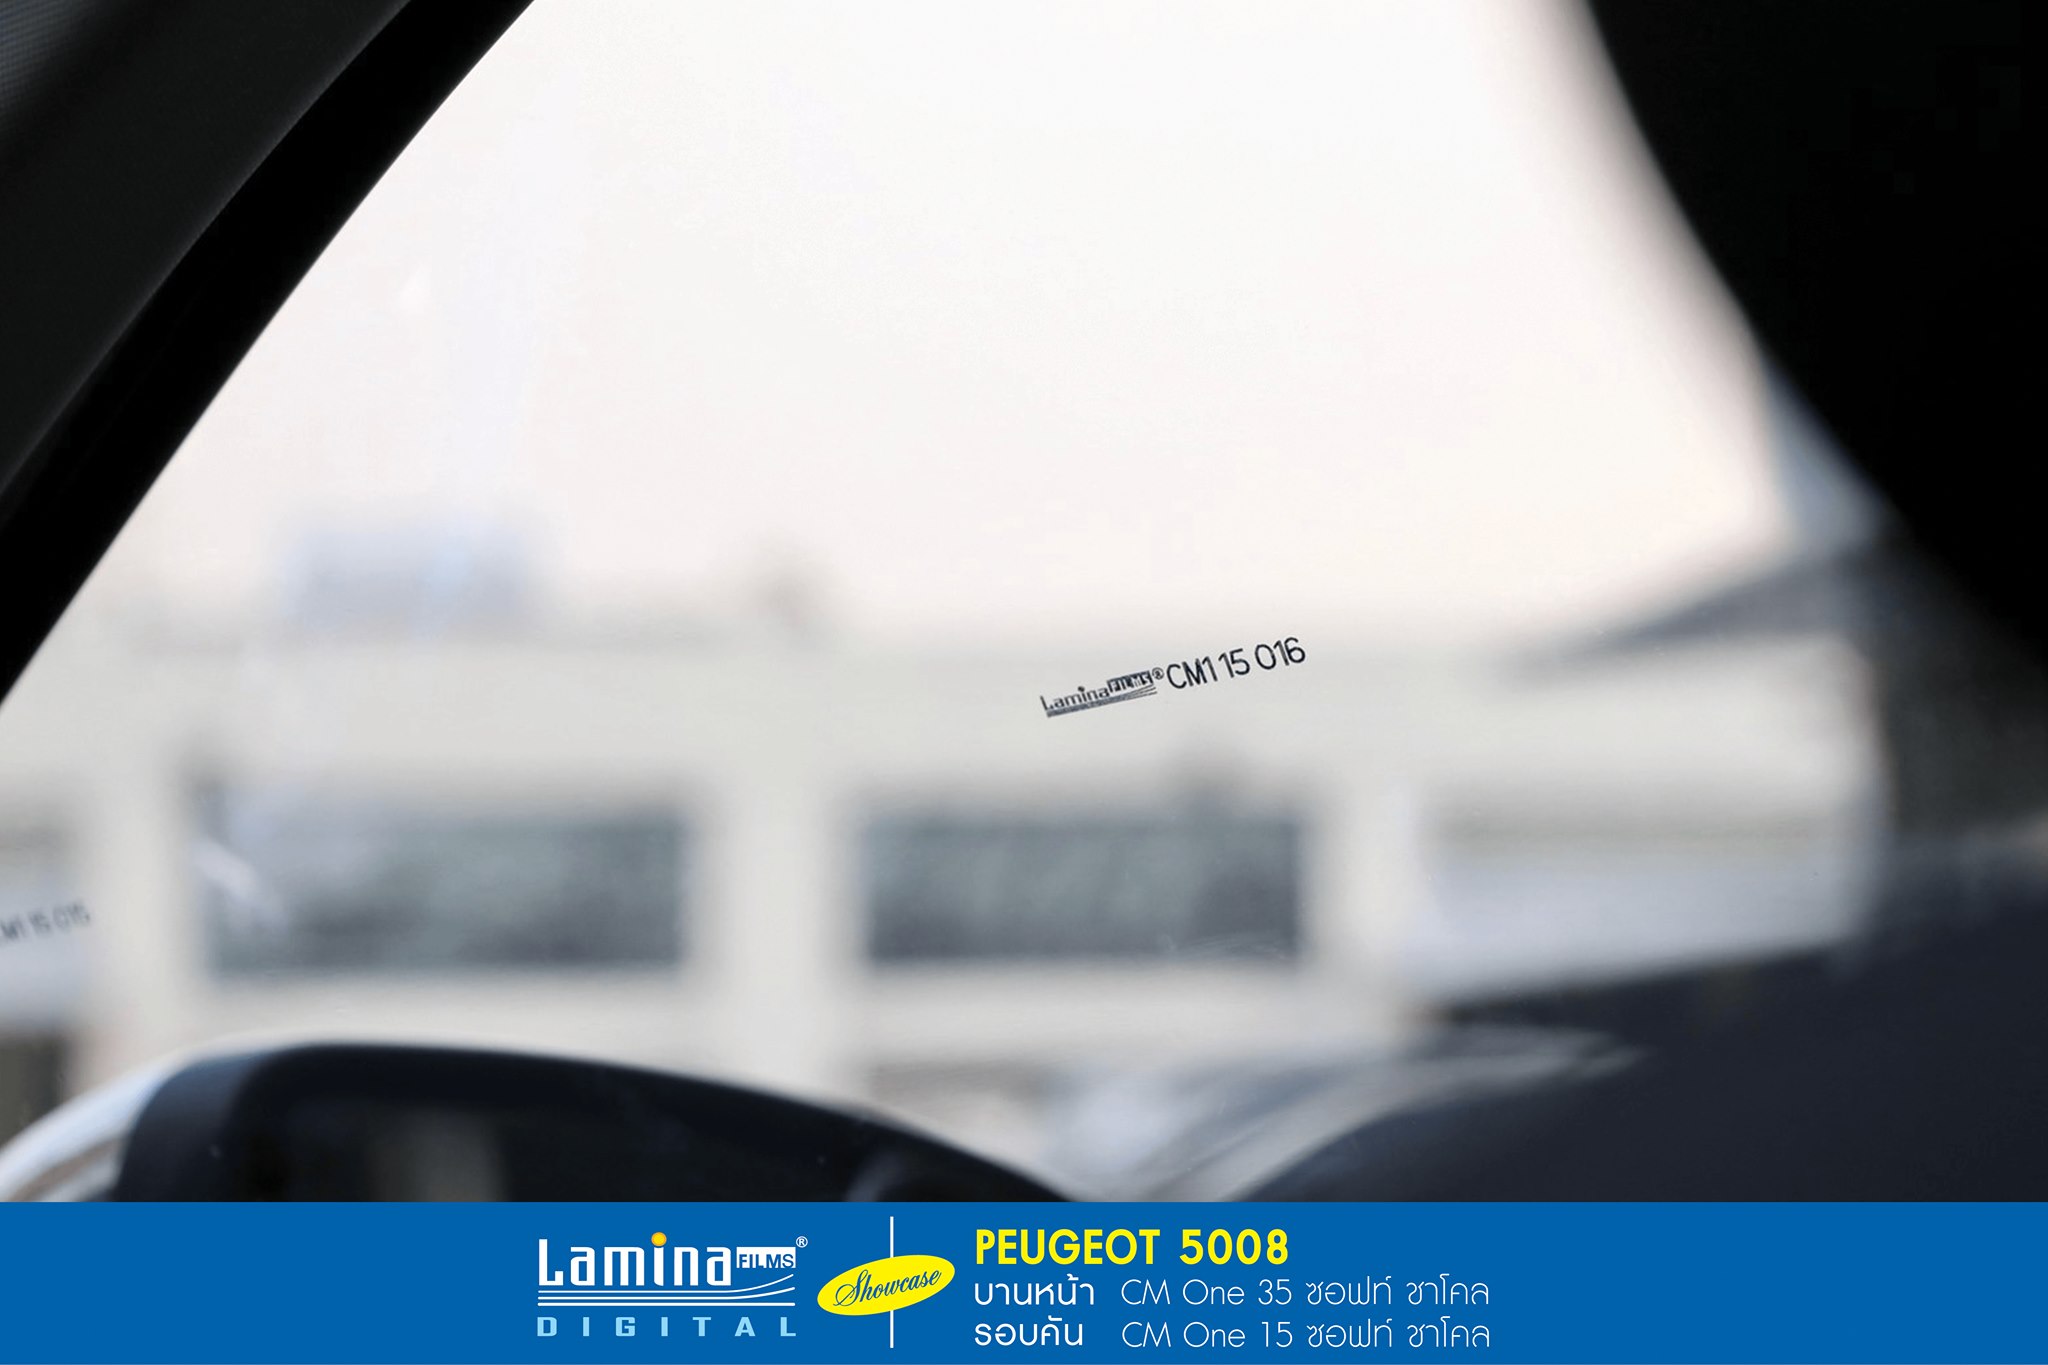 ฟิล์มเซรามิค lamina cm one Peugeot 5008 6